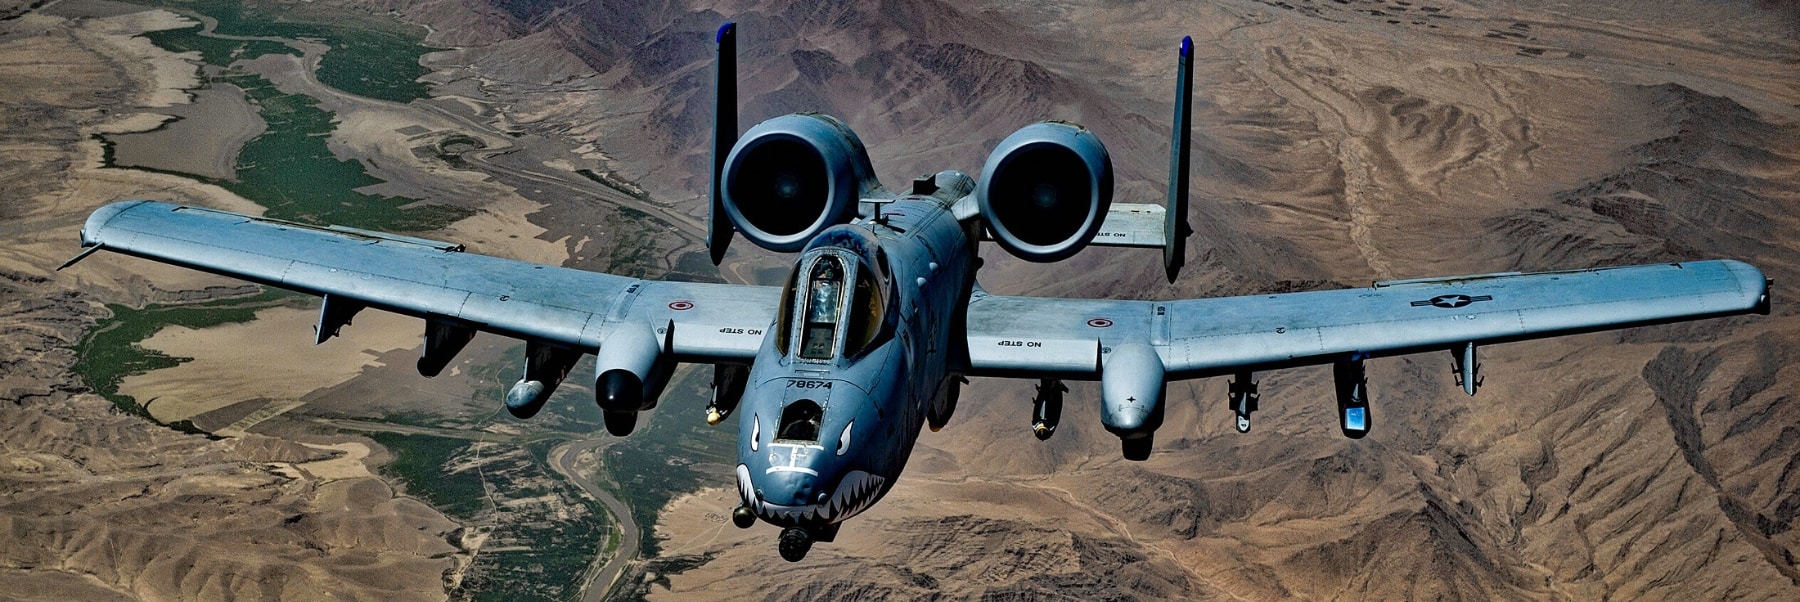 Warthog military airplane